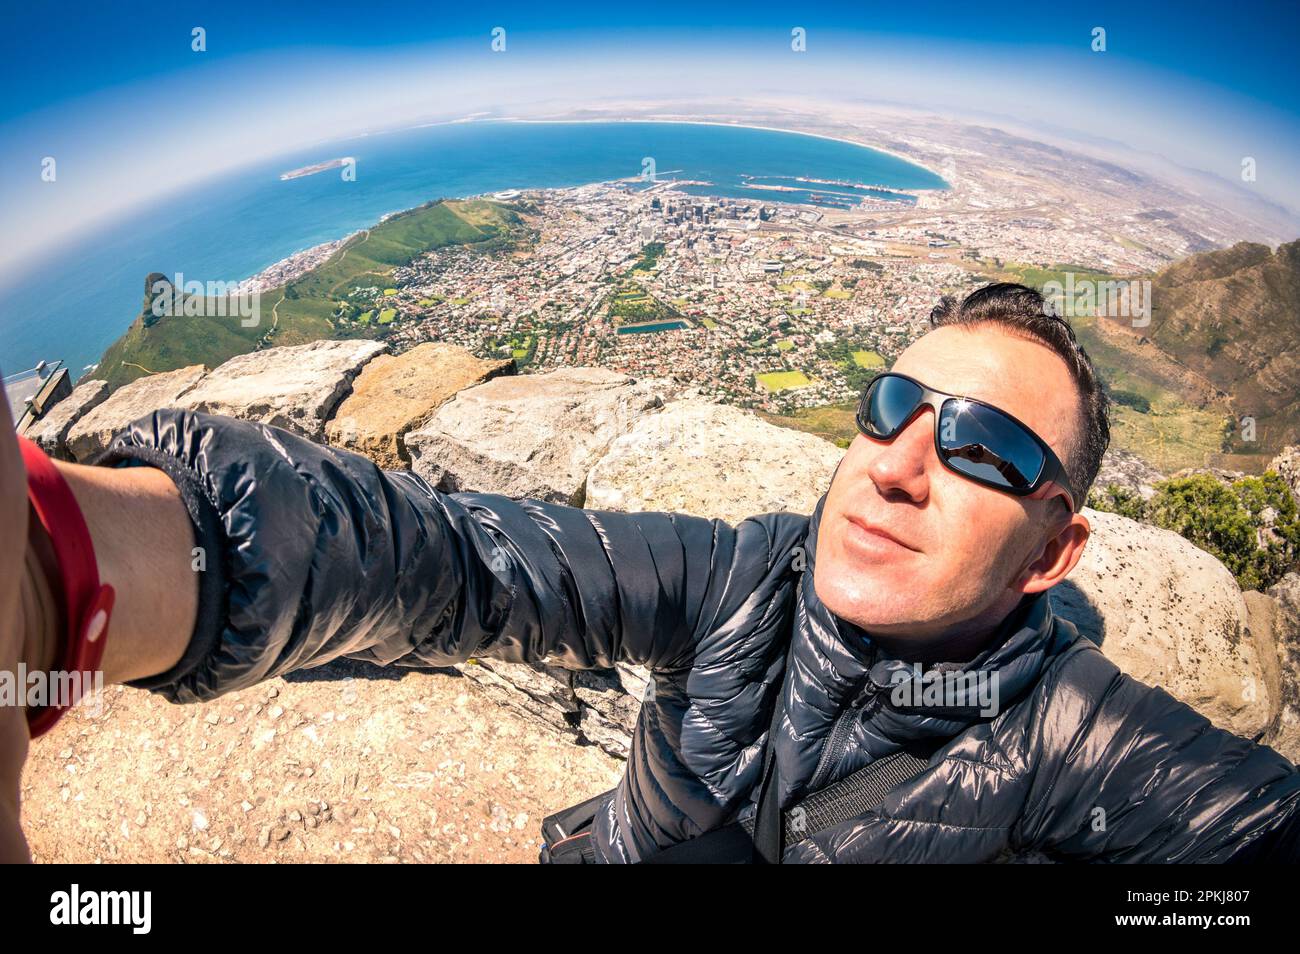 Moderne gutaussehenden jungen Mann eine selfie am Tafelberg in Kapstadt - Adventure travel Lifestyle in Verbindung mit der Natur - Reise Ausflug Stockfoto